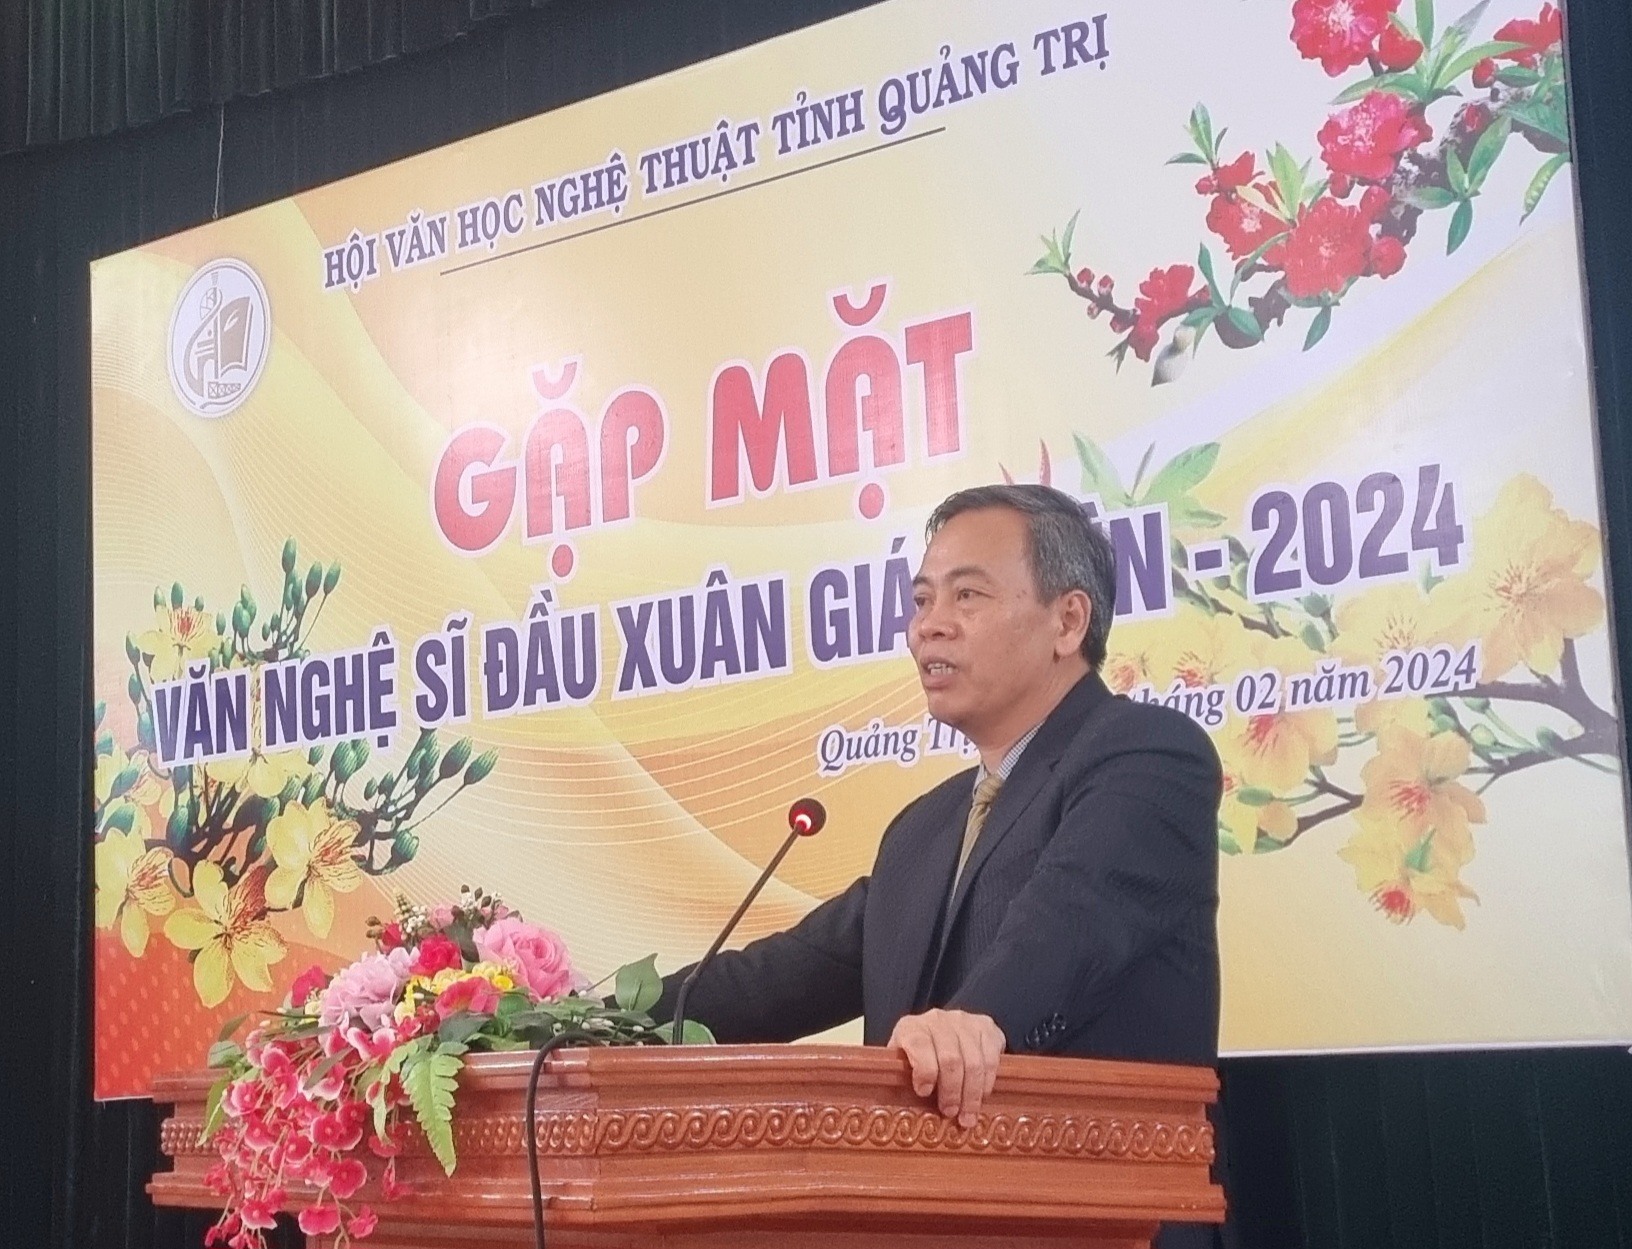 Phó Bí thư Thường trực Tỉnh ủy, Chủ tịch HĐND tỉnh Nguyễn Đăng Quang phát biểu tại buổi gặp mặt - Ảnh: M.L